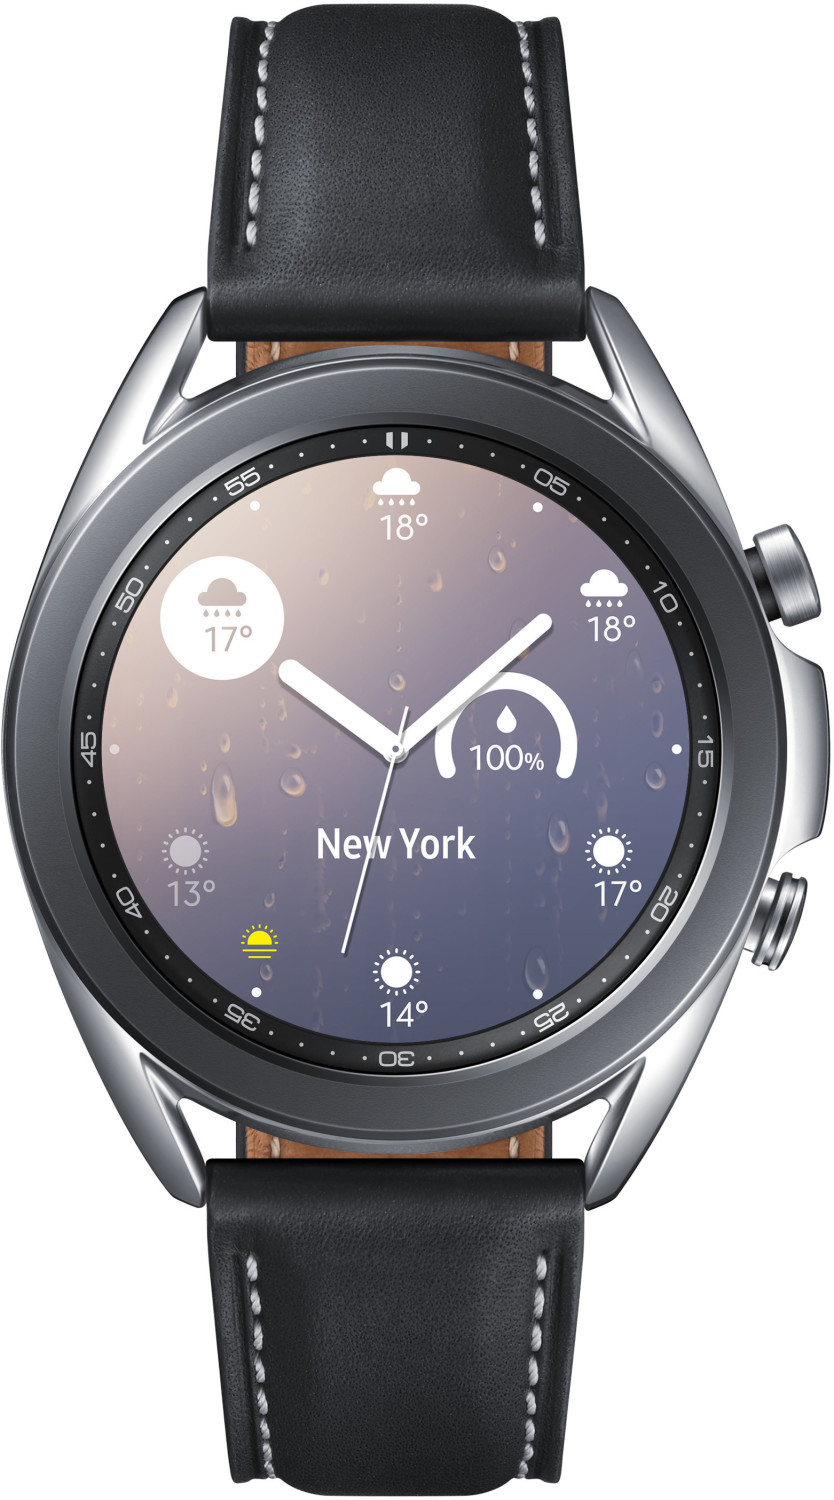 Samsung Galaxy Watch3 41mm Mystic Silver